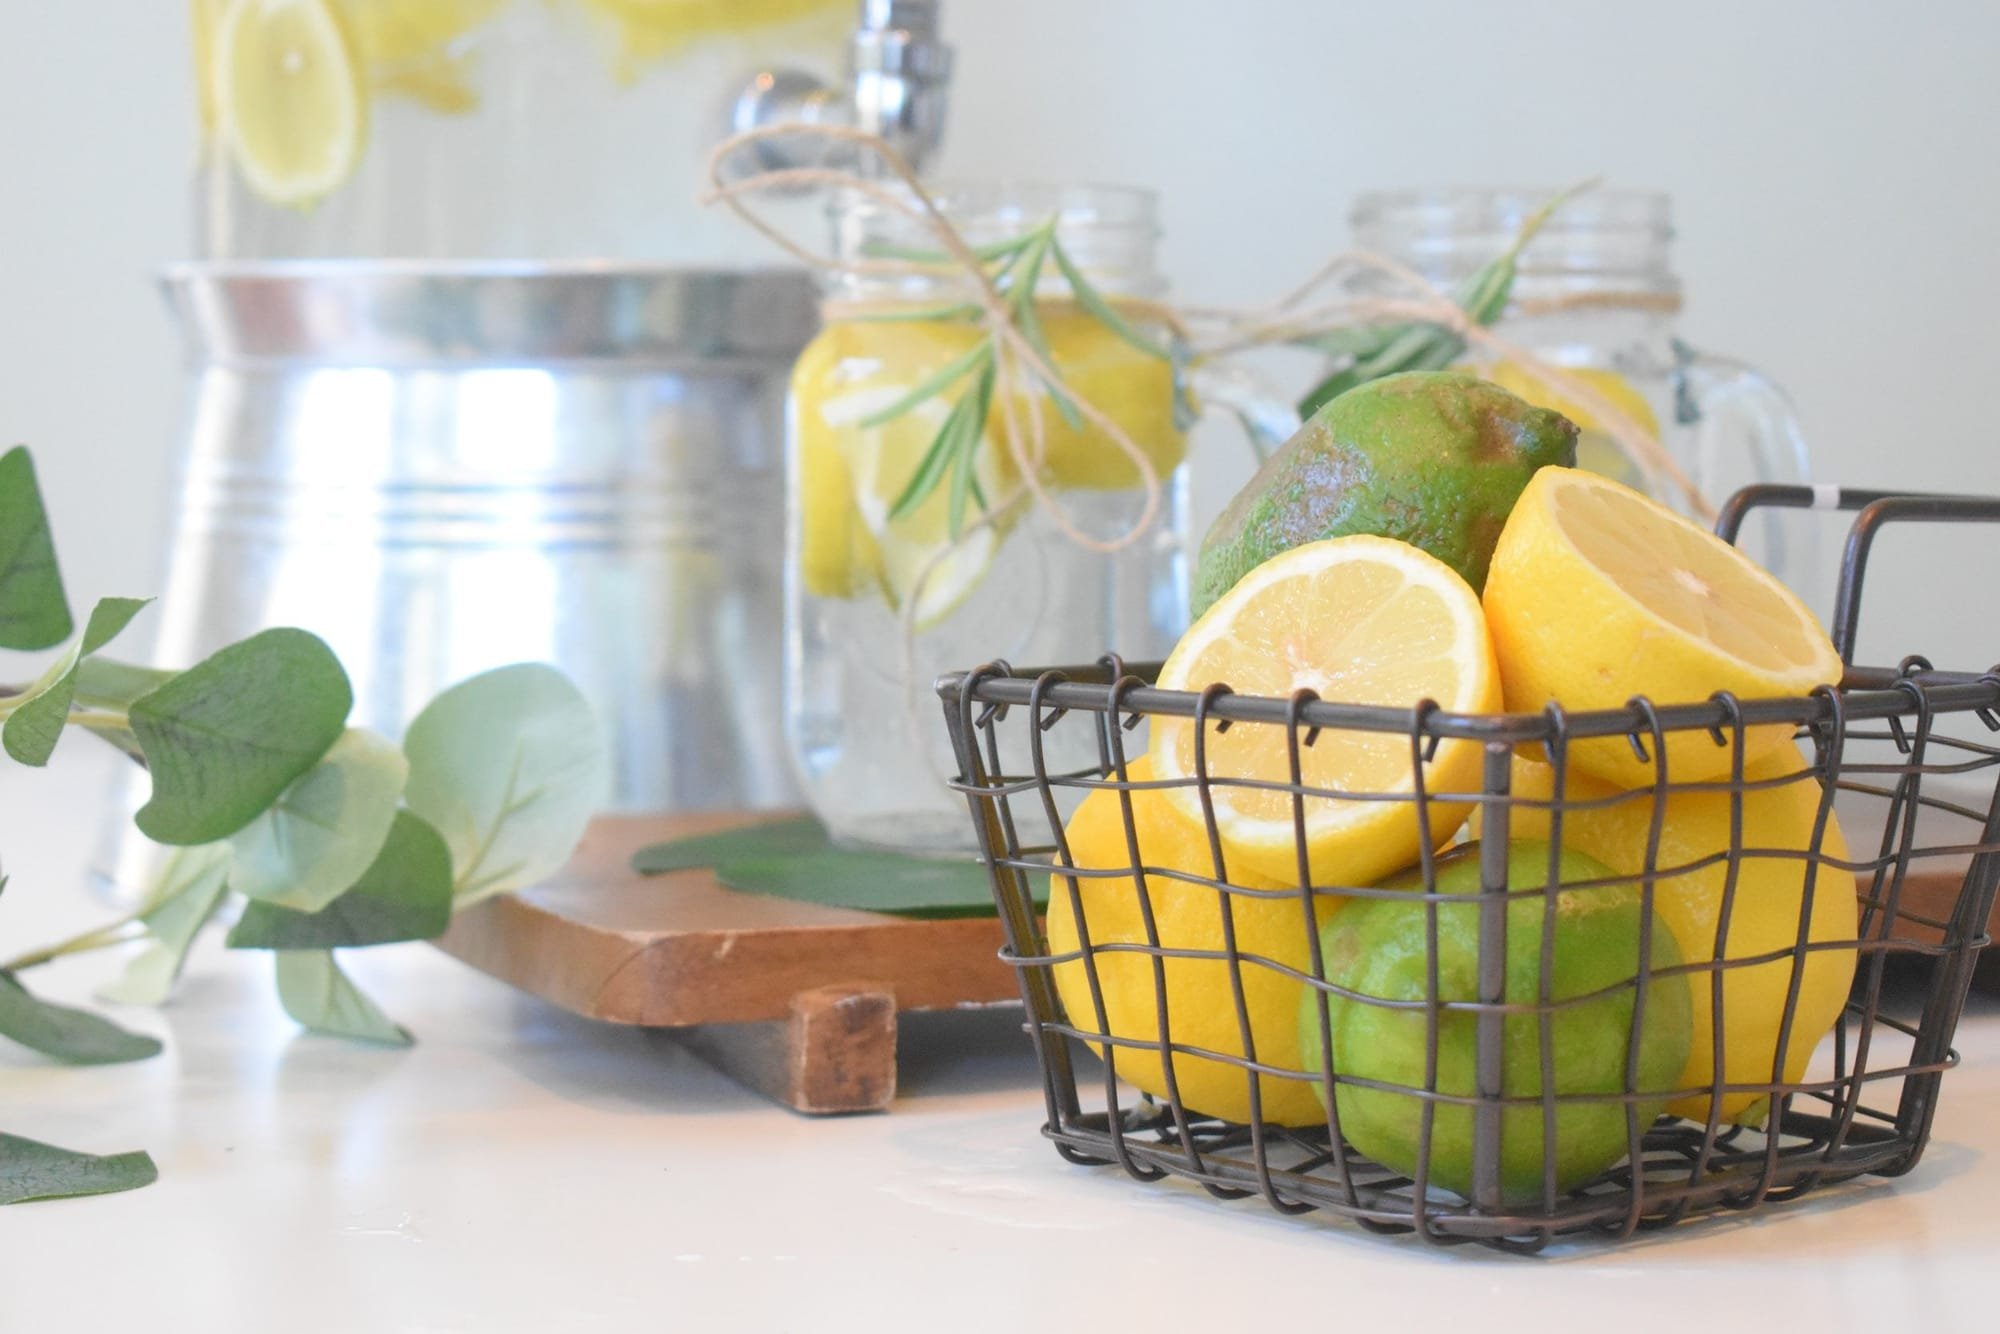 ماذا يحدث للجسم بعد شرب الماء الدافئ مع الليمون لمدة شهرين؟